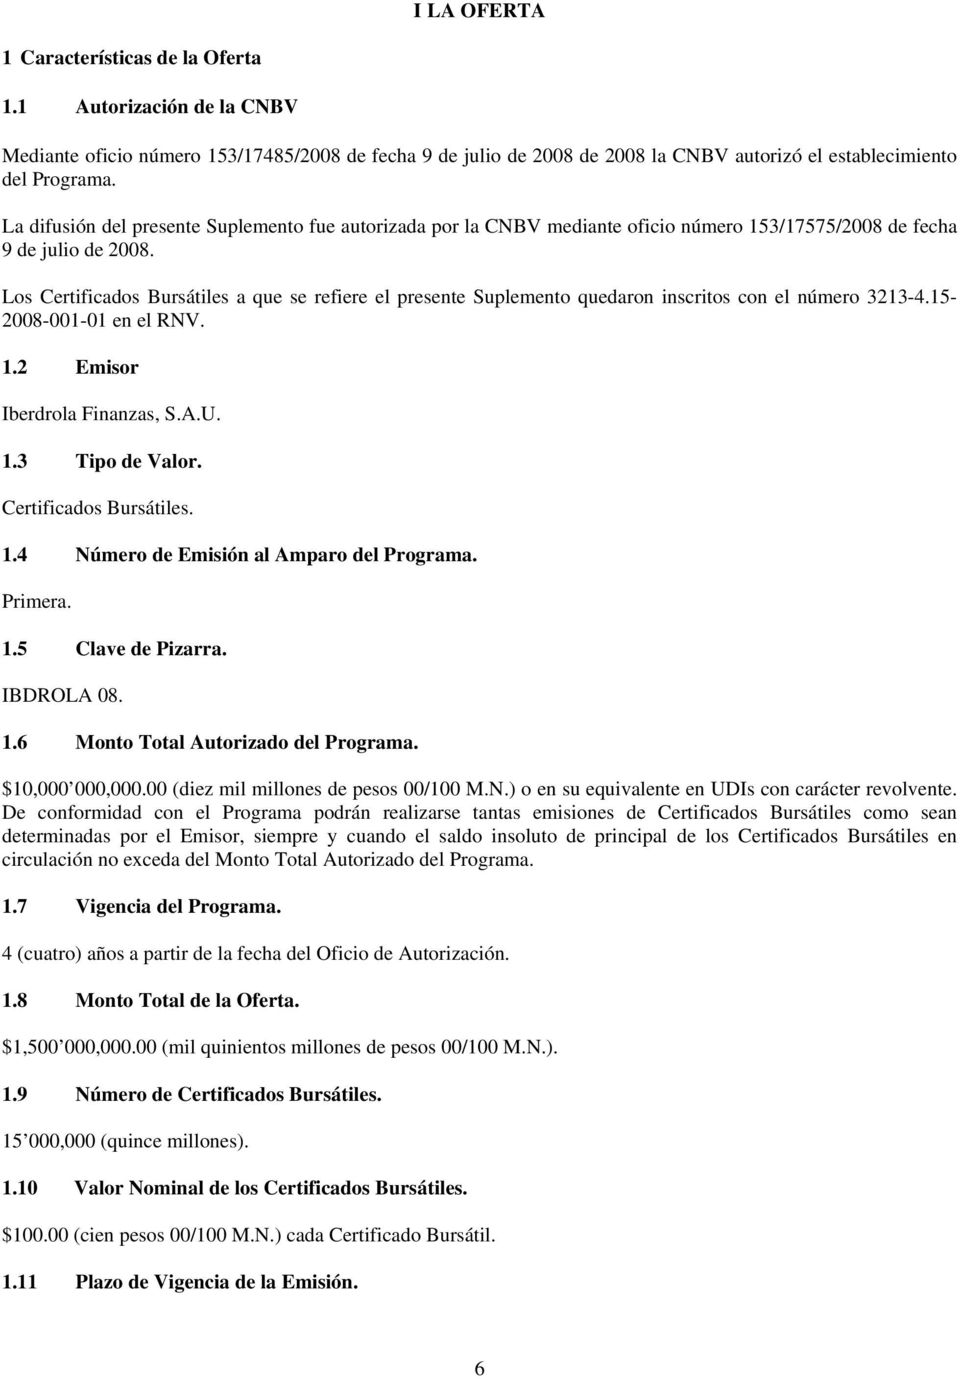 Los Certificados Bursátiles a que se refiere el presente Suplemento quedaron inscritos con el número 3213-4.15-2008-001-01 en el RNV. 1.2 Emisor Iberdrola Finanzas, S.A.U. 1.3 Tipo de Valor.